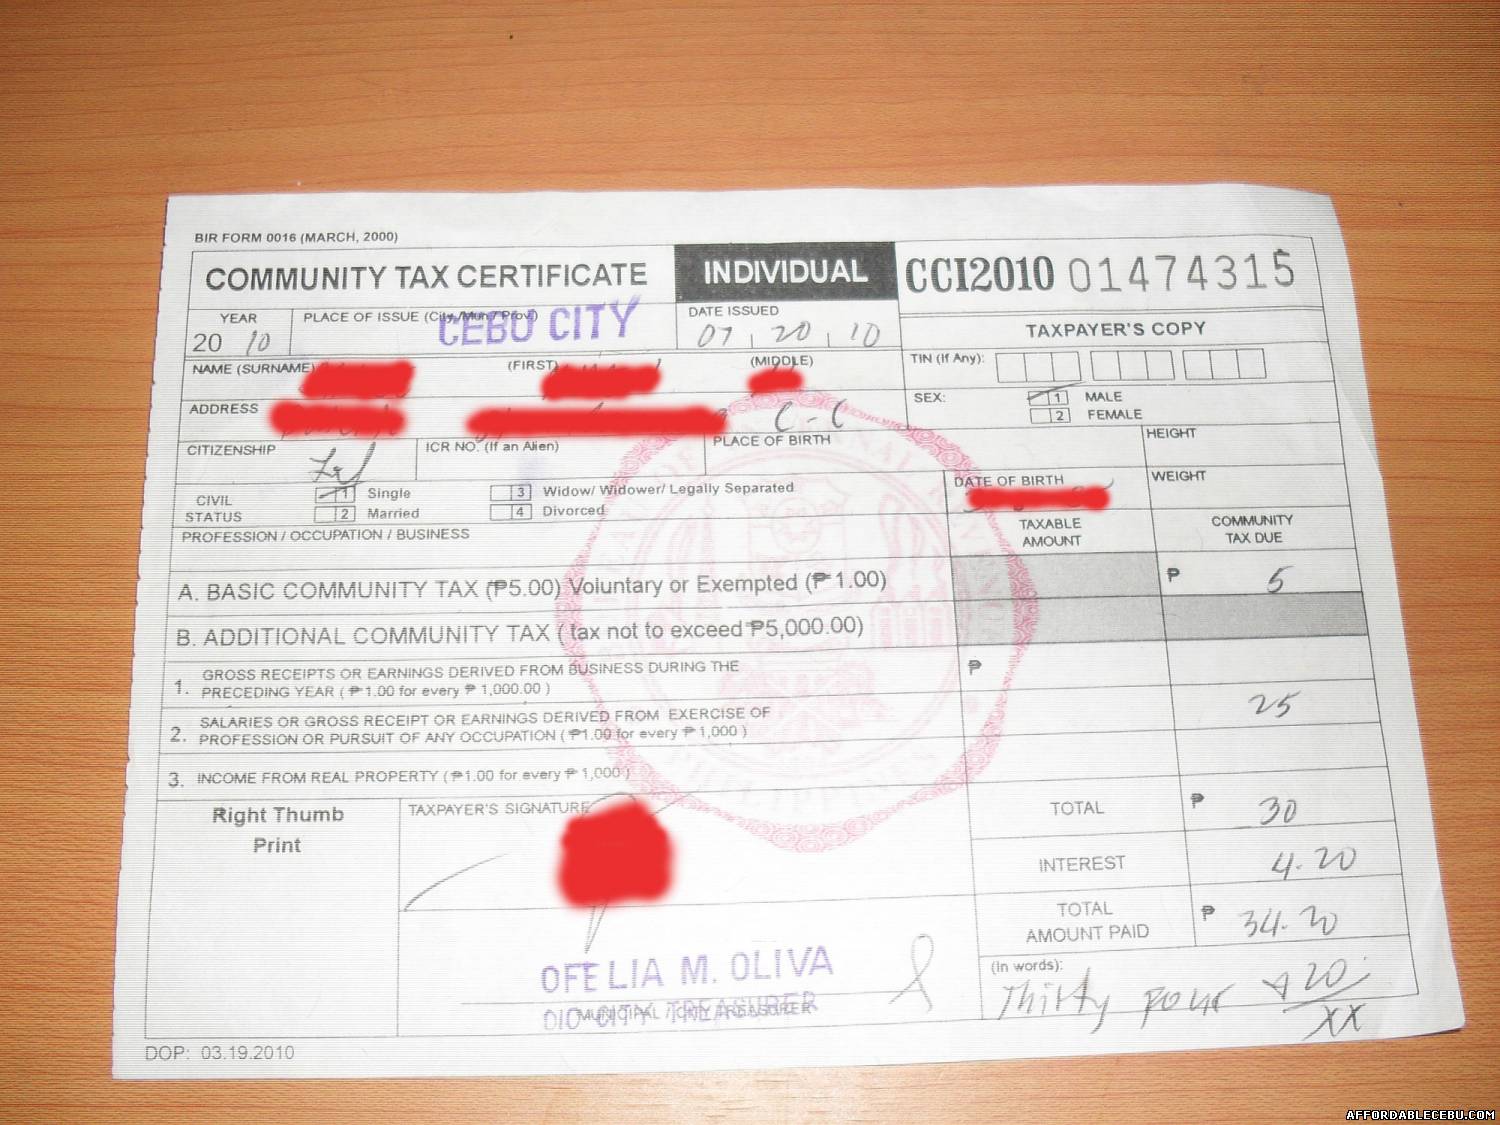 CEDULA (Community Tax Certificate or CTC)